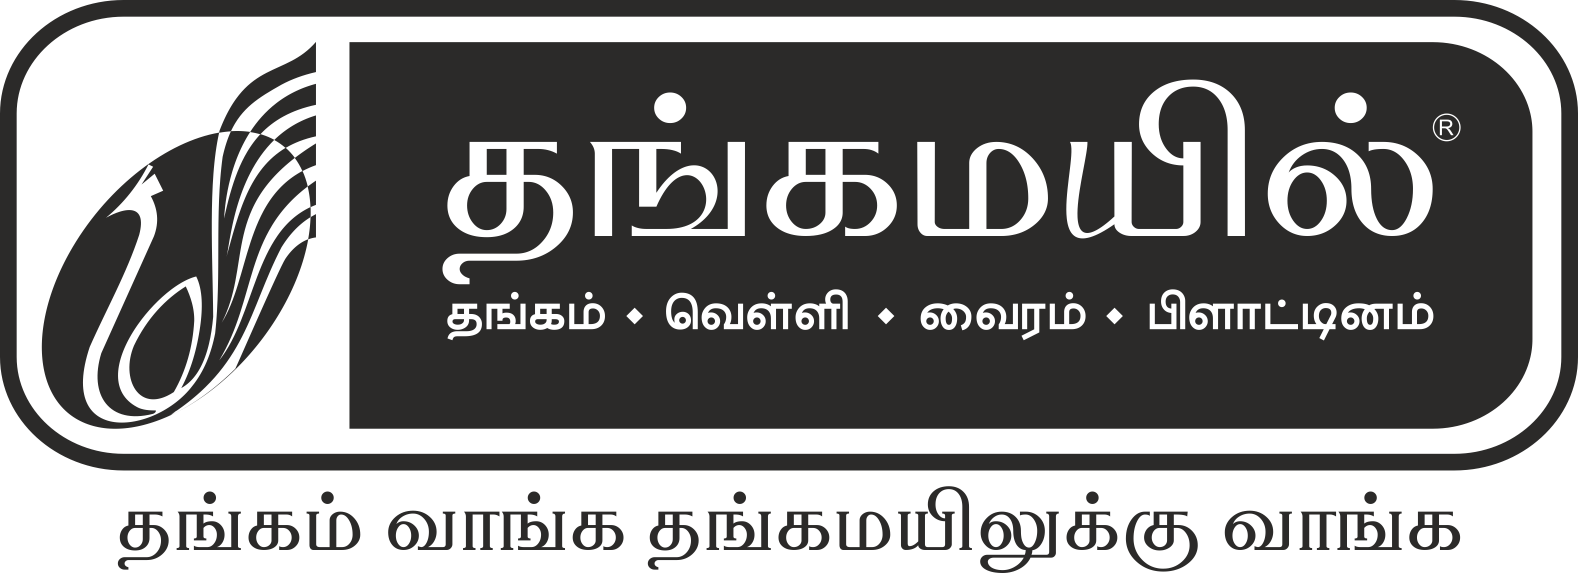 s-tamil-box-logo